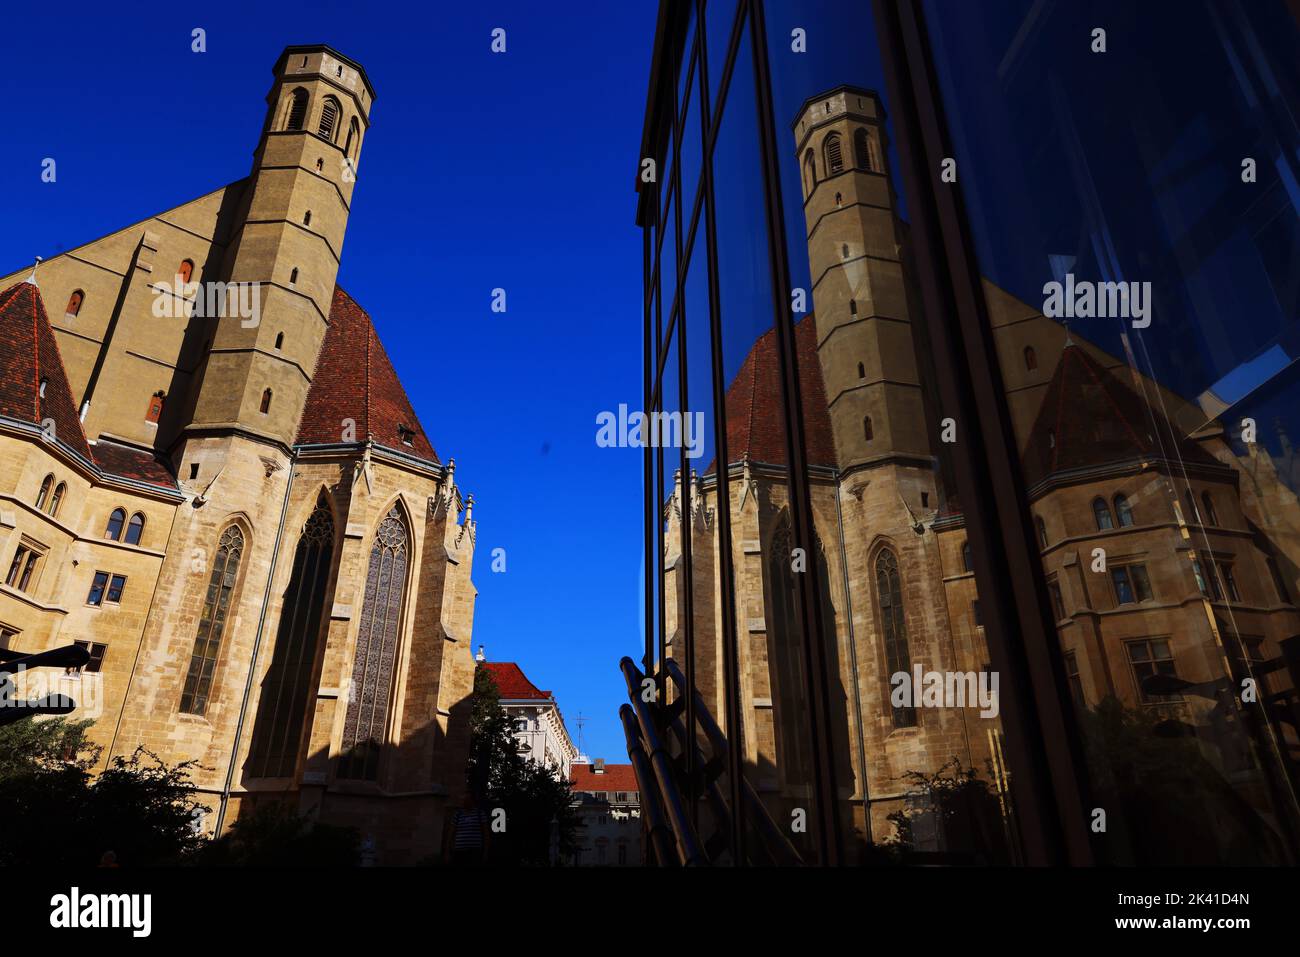 Gotik, Wien, Wien Kirche, Kirche, die Minoritenkirche in der Innenstadt von Wien ist eine der schönsten gotischen Kirchen Wiens Stock Photo